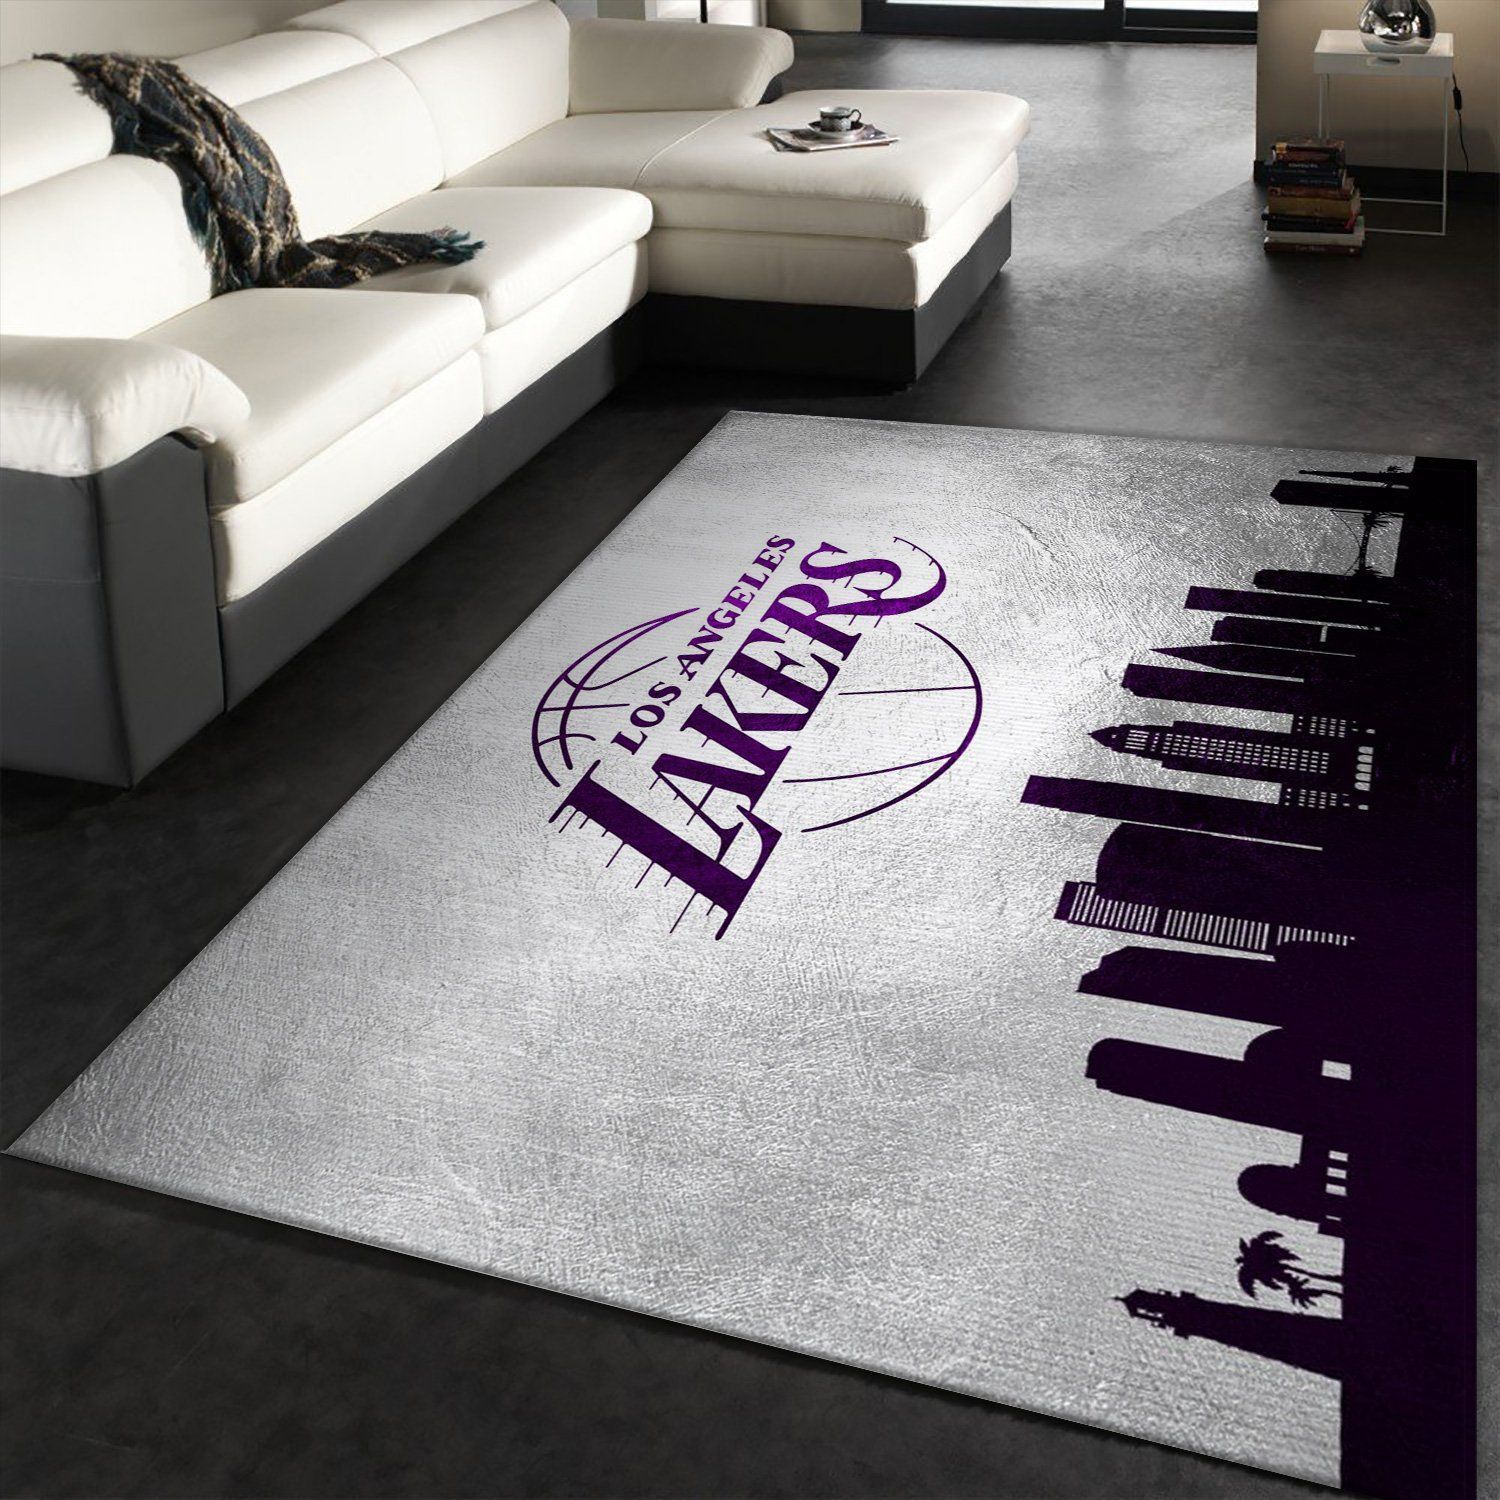 Los Angeles Lakers Skyline Area Rug Carpet